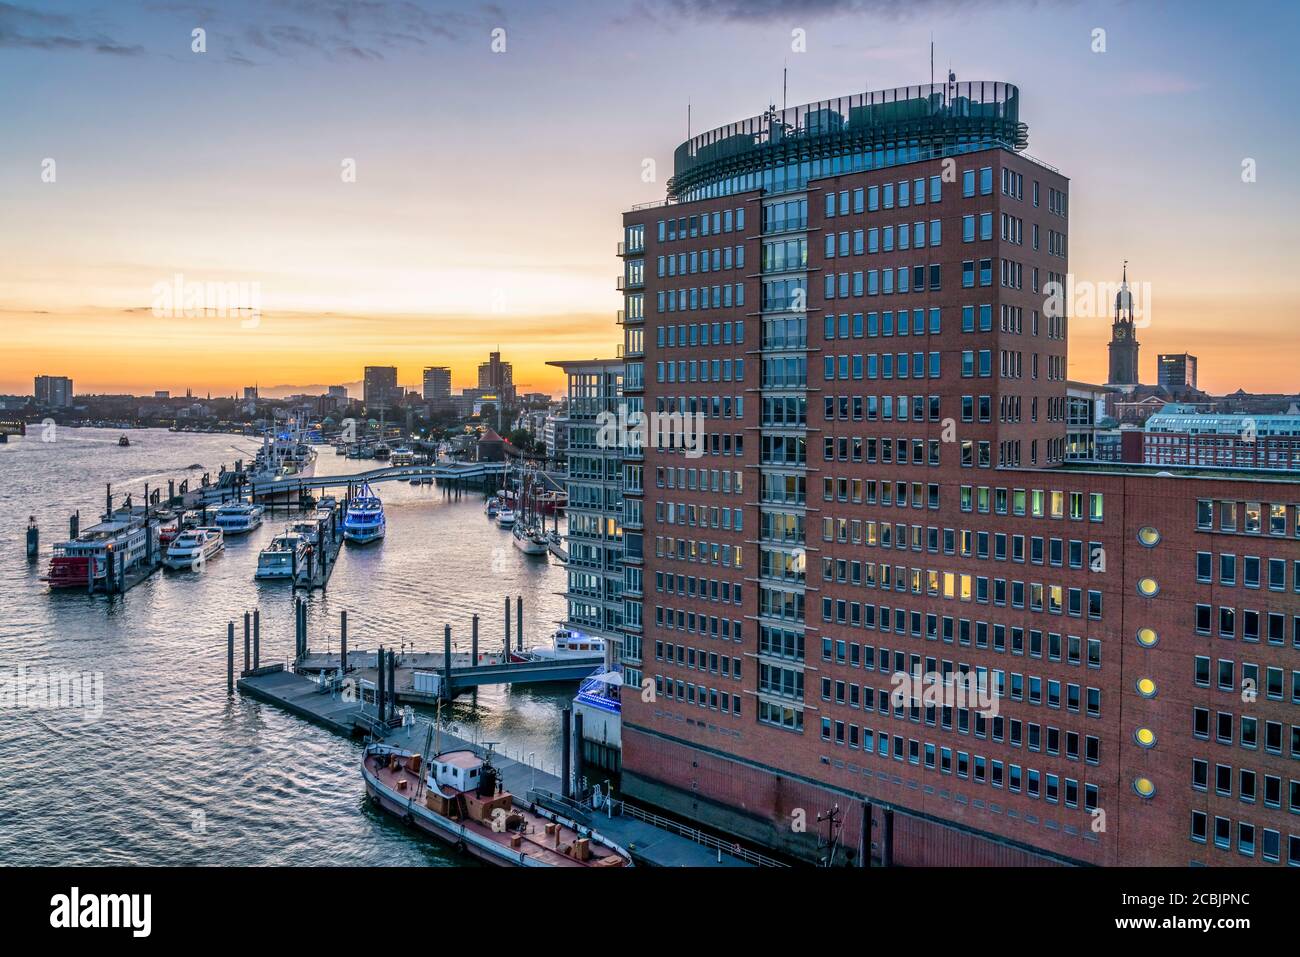 Ausblick von der Elbphilharmonie auf das Hanseatic Trade Center, Sandtorhafen, Speicherstadt, Hafenity, Amburgo, Deutschland, Europa Foto Stock